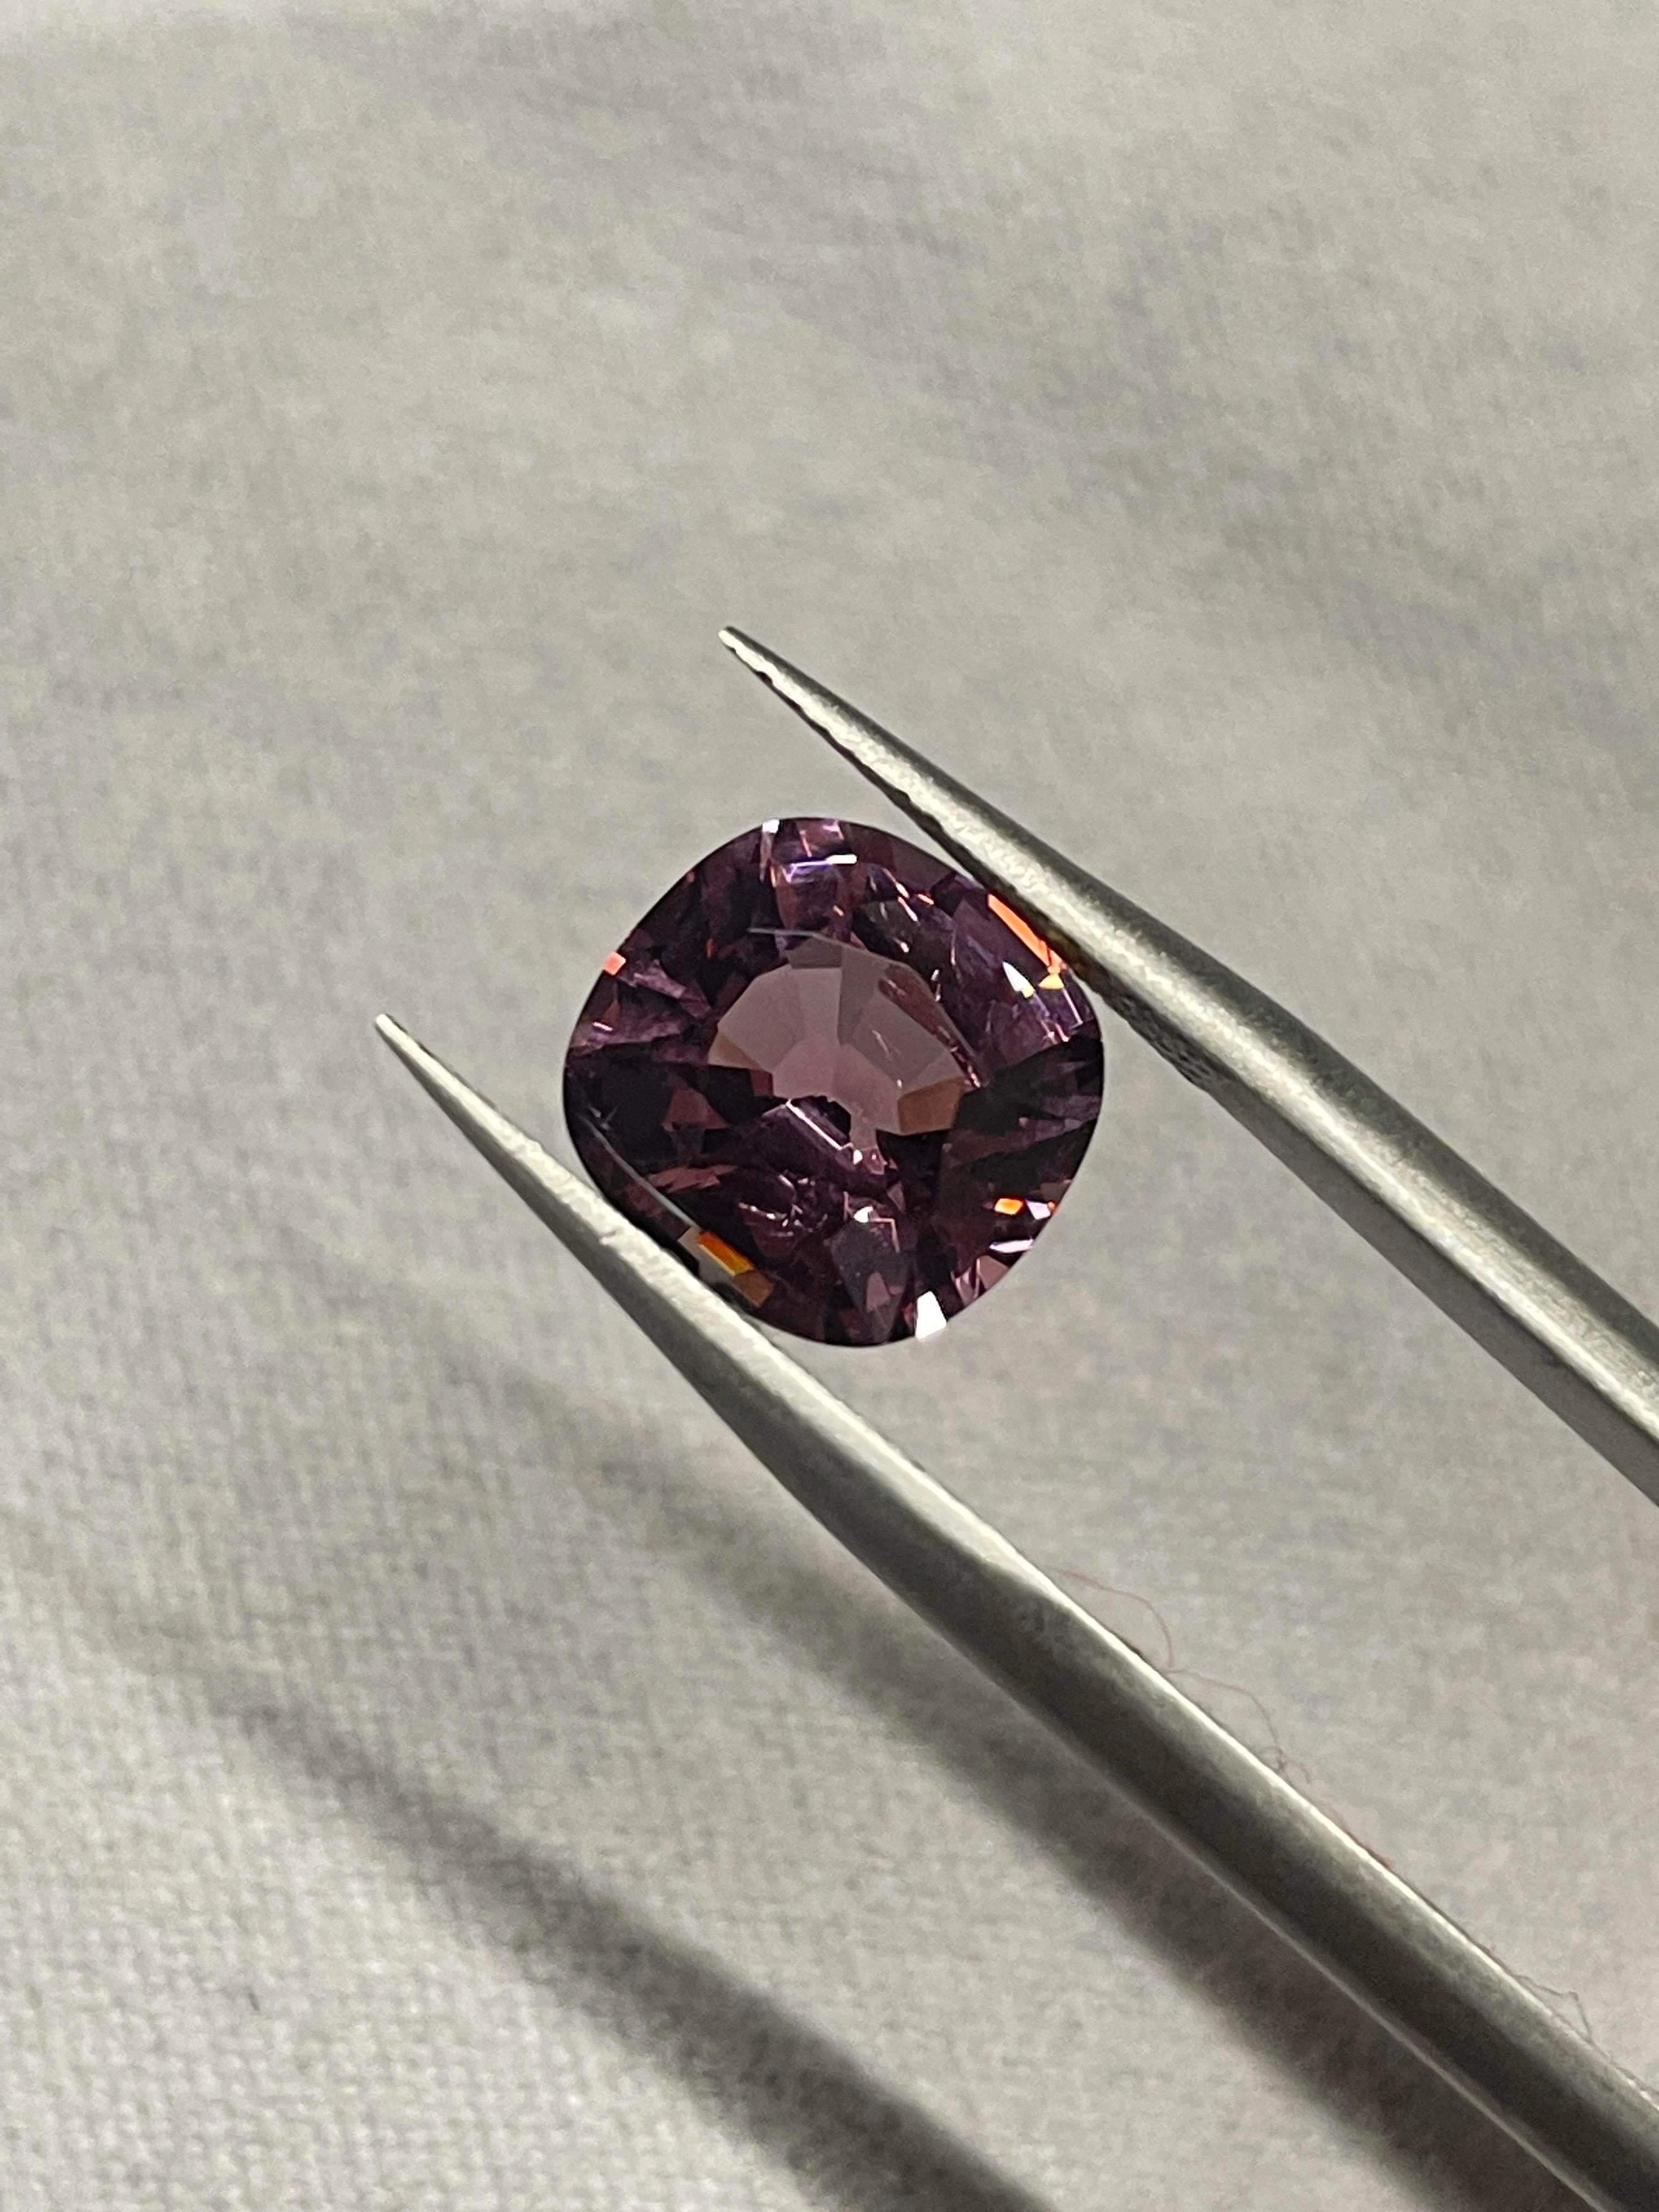 Dieser Edelstein stammt aus dem berühmten Burma Herkunft, ist das Gewicht über 3 Karat 3.06 Karat, um genau zu sein, hat es eine deutliche Sättigung der rosa Farbe mit leichten lila in ihm gemischt, was macht dieses Juwel noch besser ist, dass es